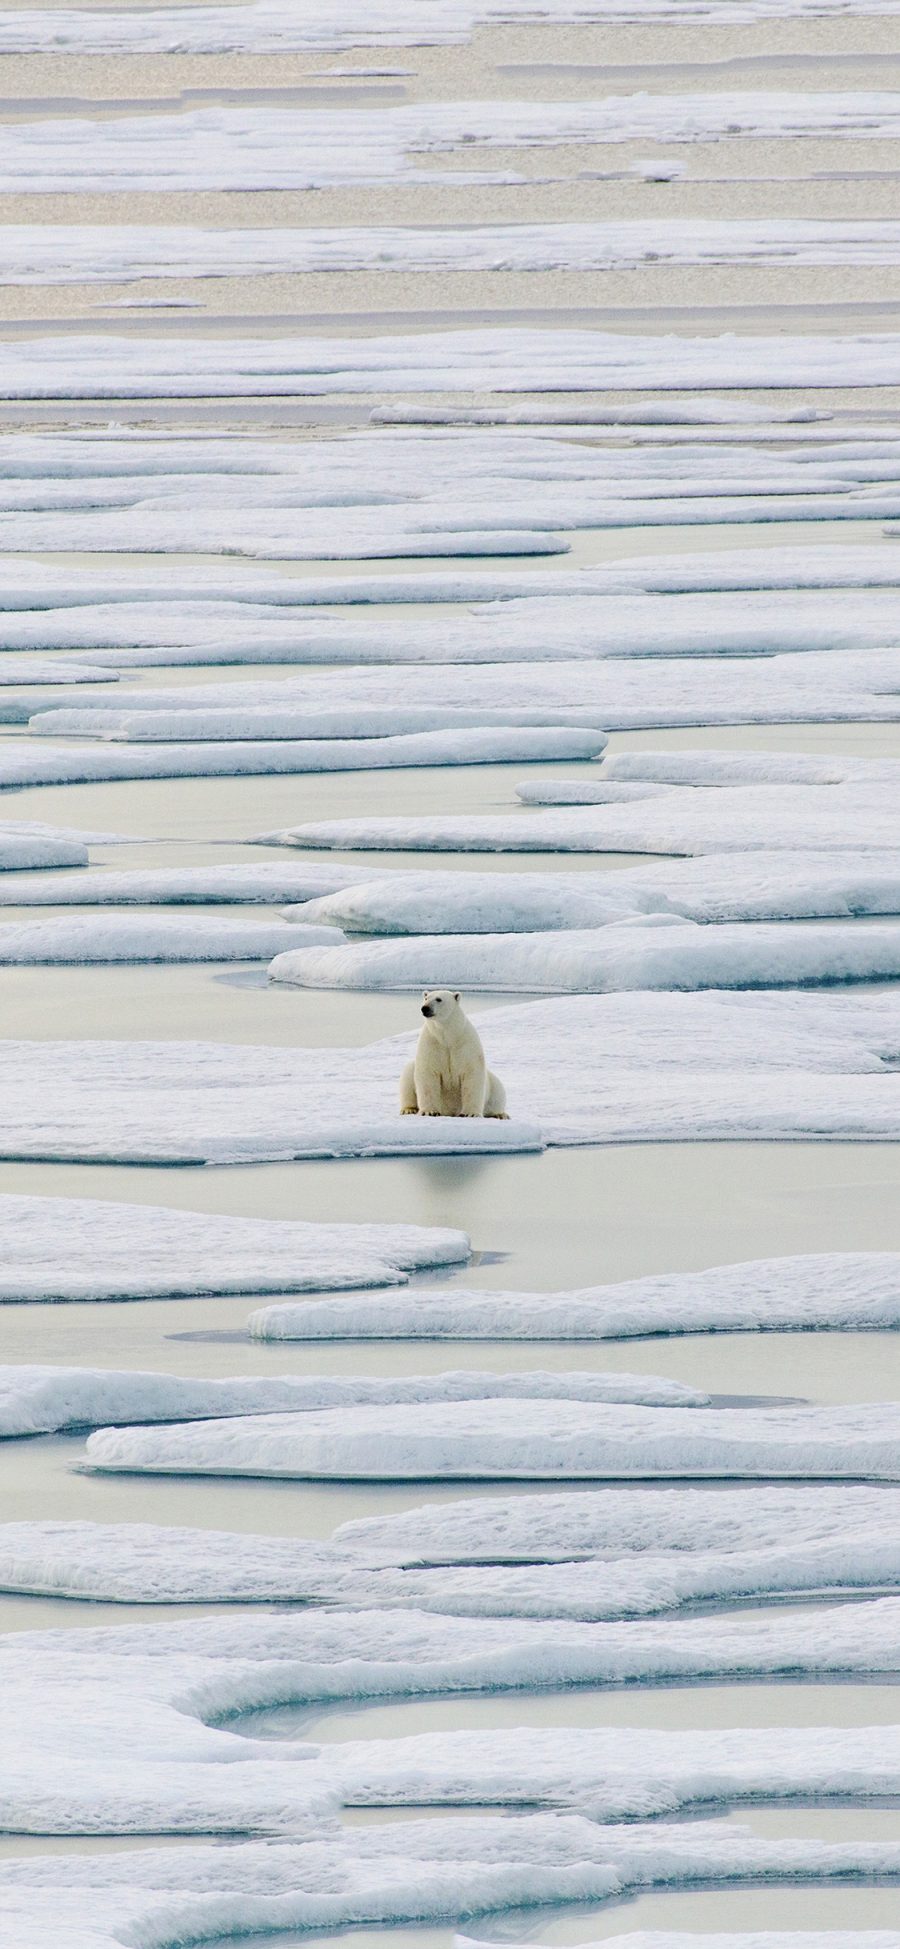 [2436×1125]北极熊 冰川 海水 白色 苹果手机壁纸图片